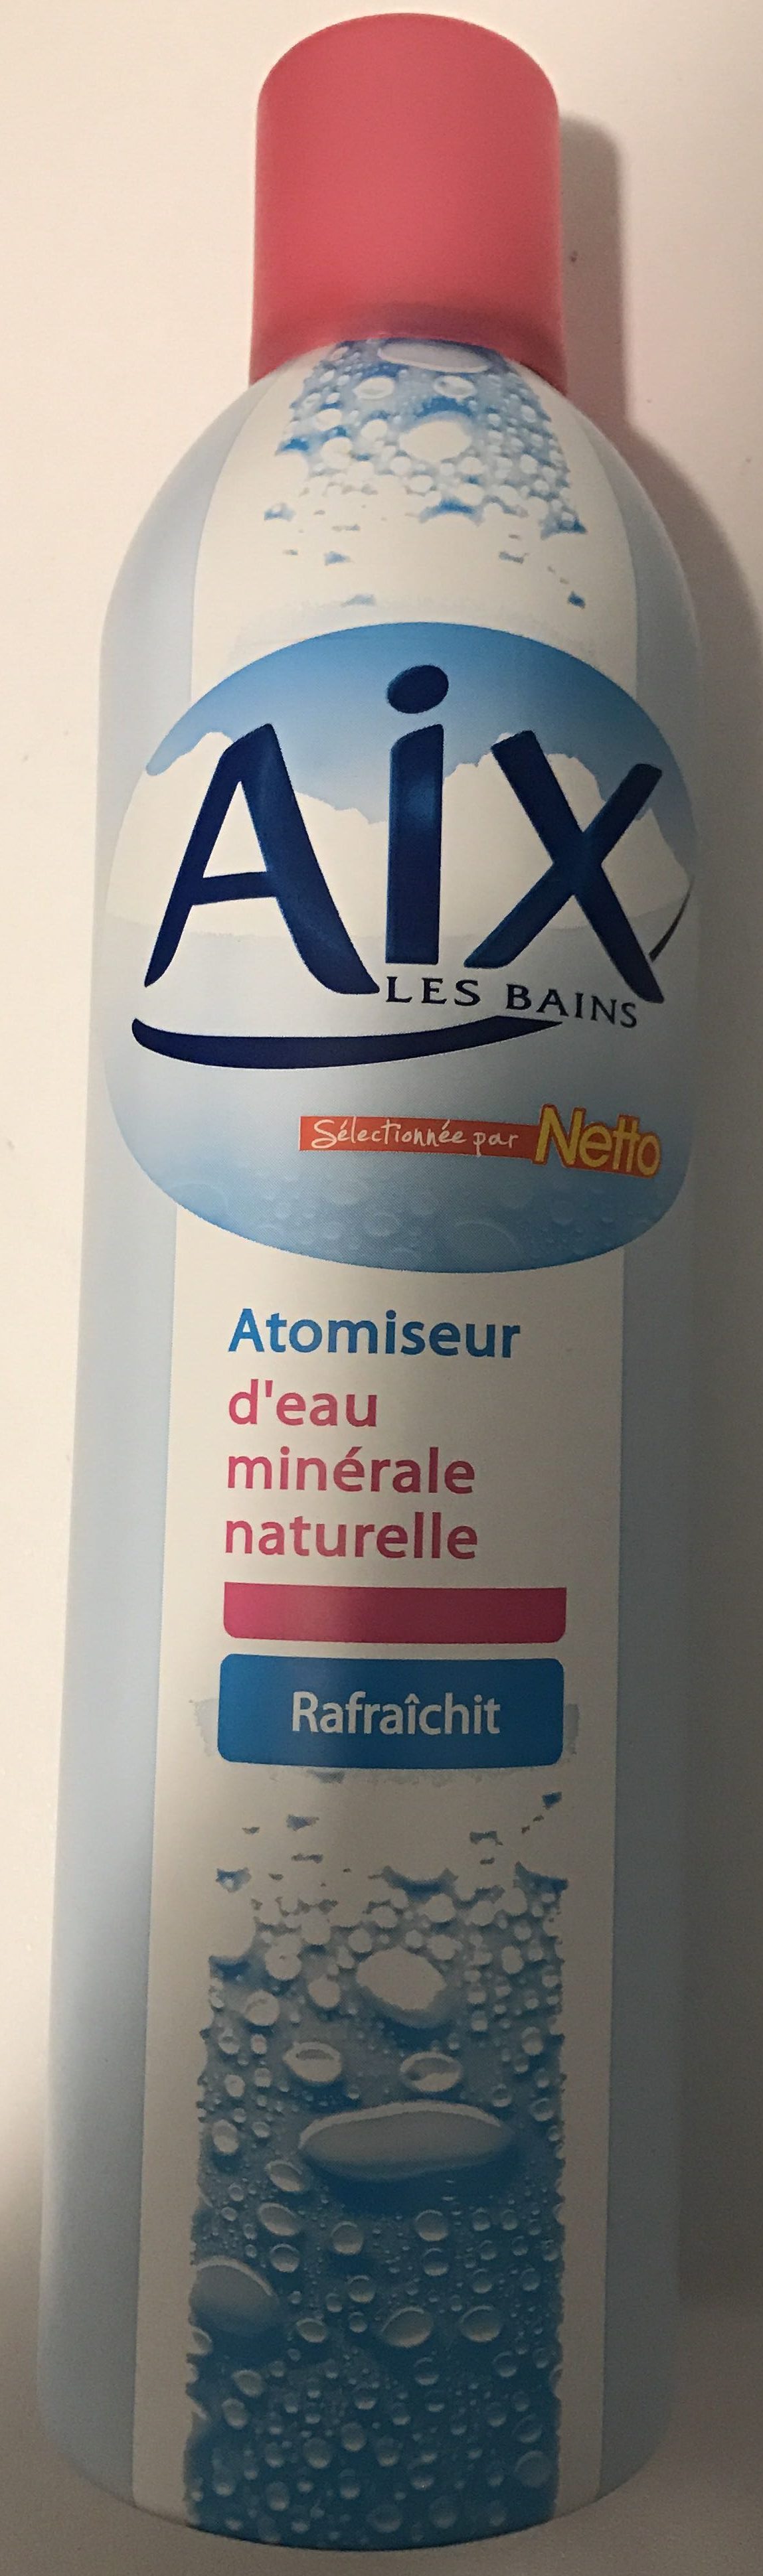 Atomiseur d'eau minérale naturelle - 製品 - fr